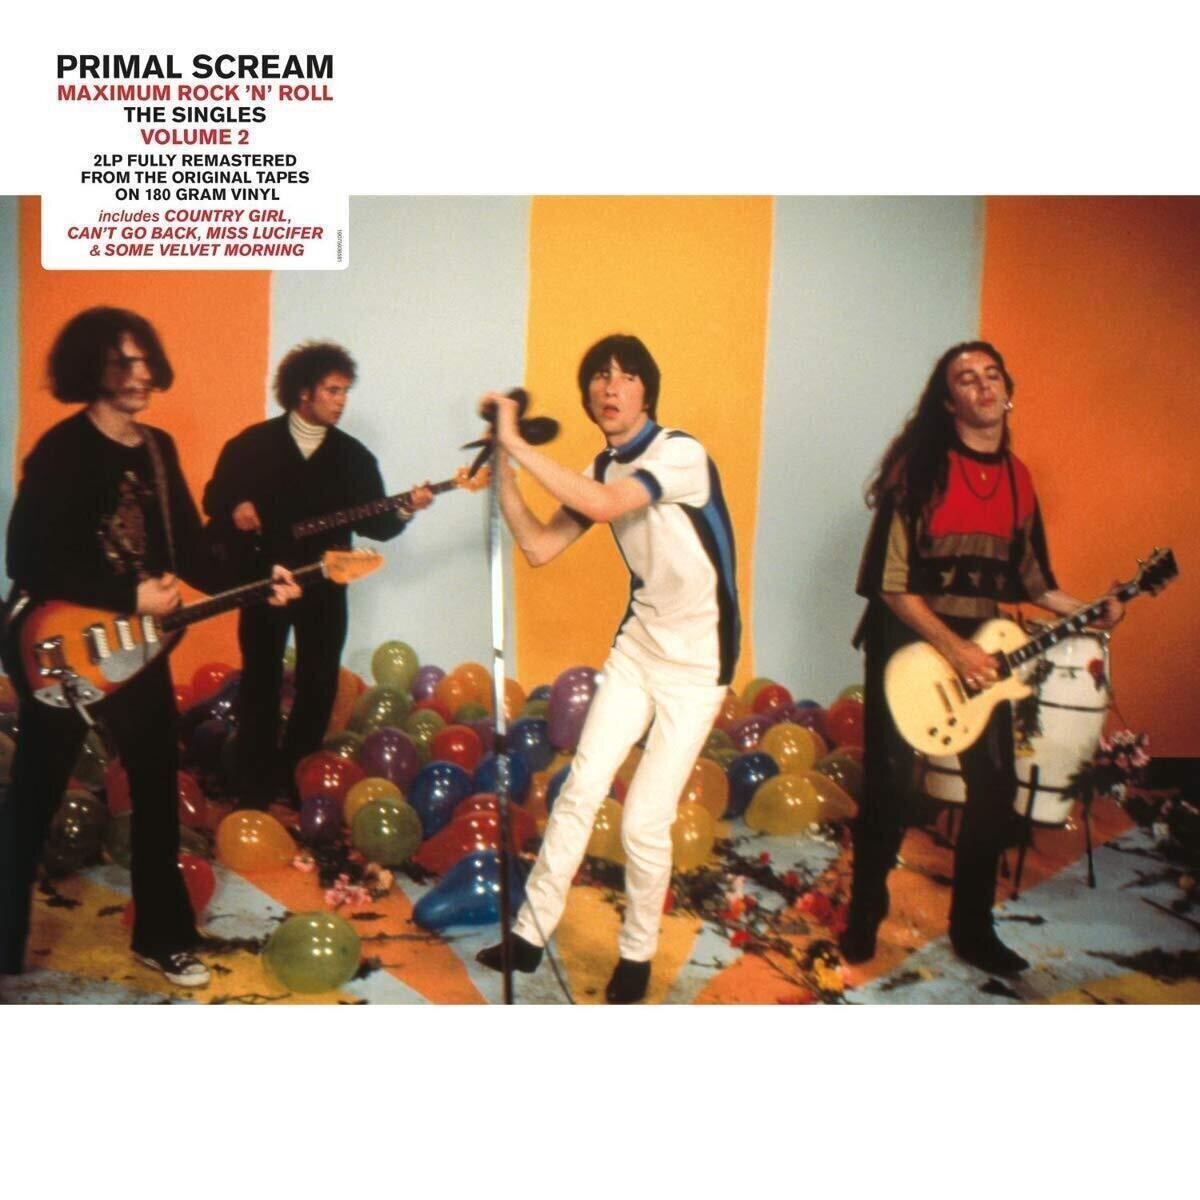 Disque vinyle Primal Scream - Maximum Rock 'N' Roll: the Singles Vol. 2 (2 LP)